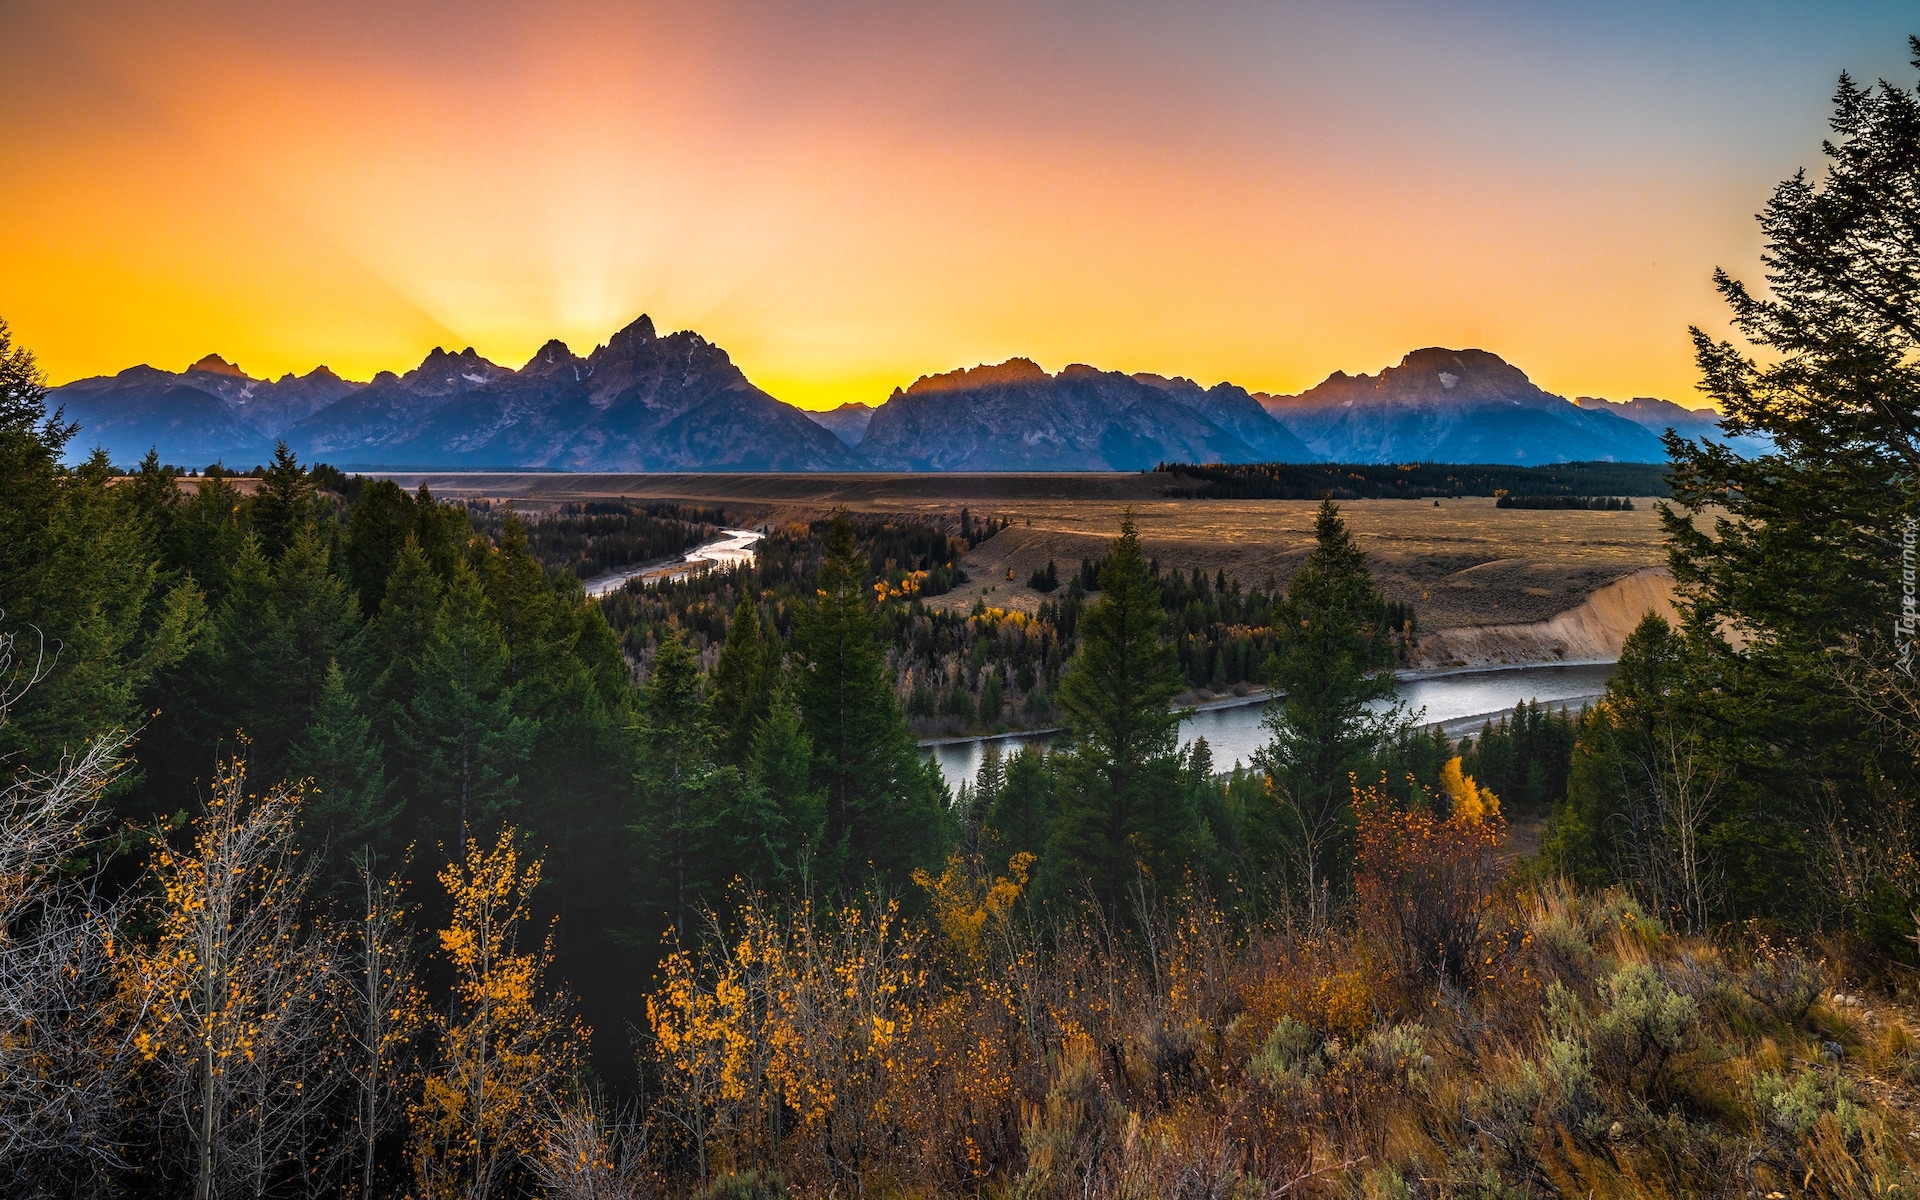 Park Narodowy Grand Teton, Góry, Teton Range, Las, Drzewa, Rzeka, Snake River, Promienie słońca, Stan Wyoming, Stany Zjednoczone